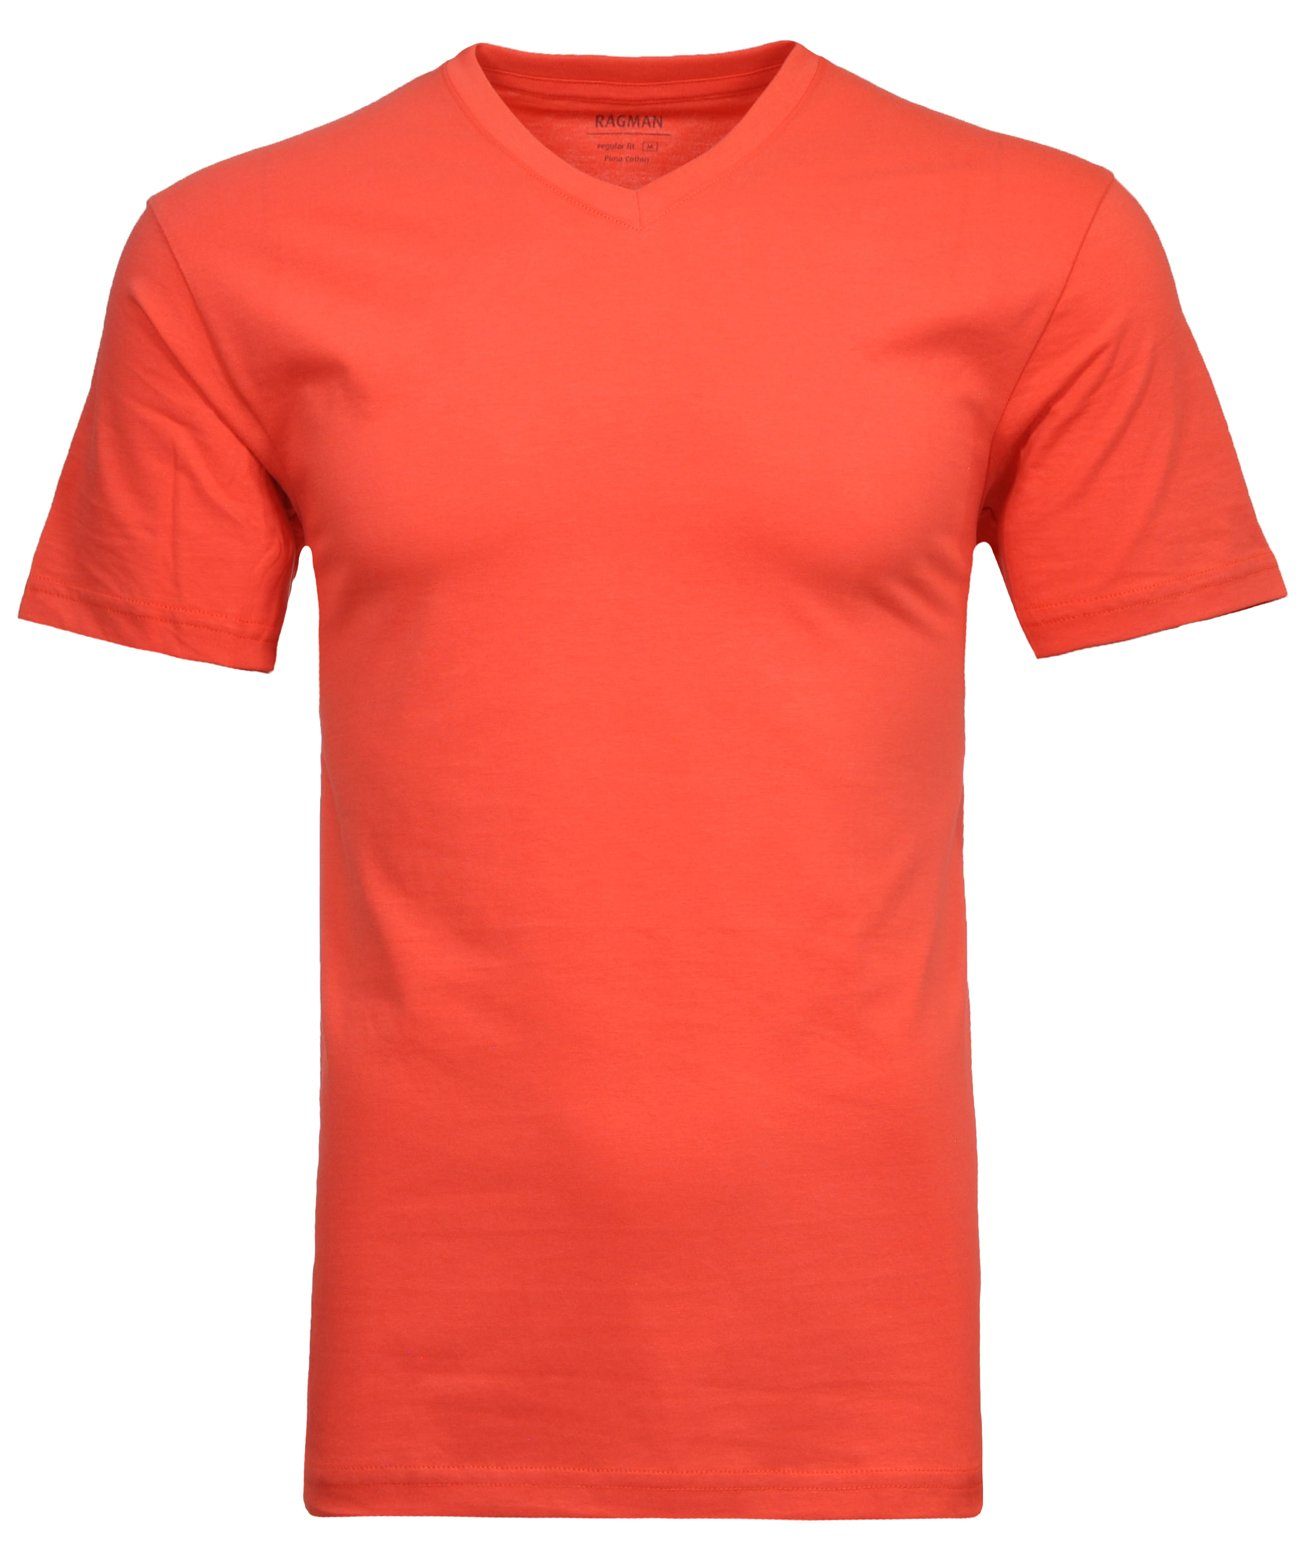 Koralle-652 RAGMAN T-Shirt